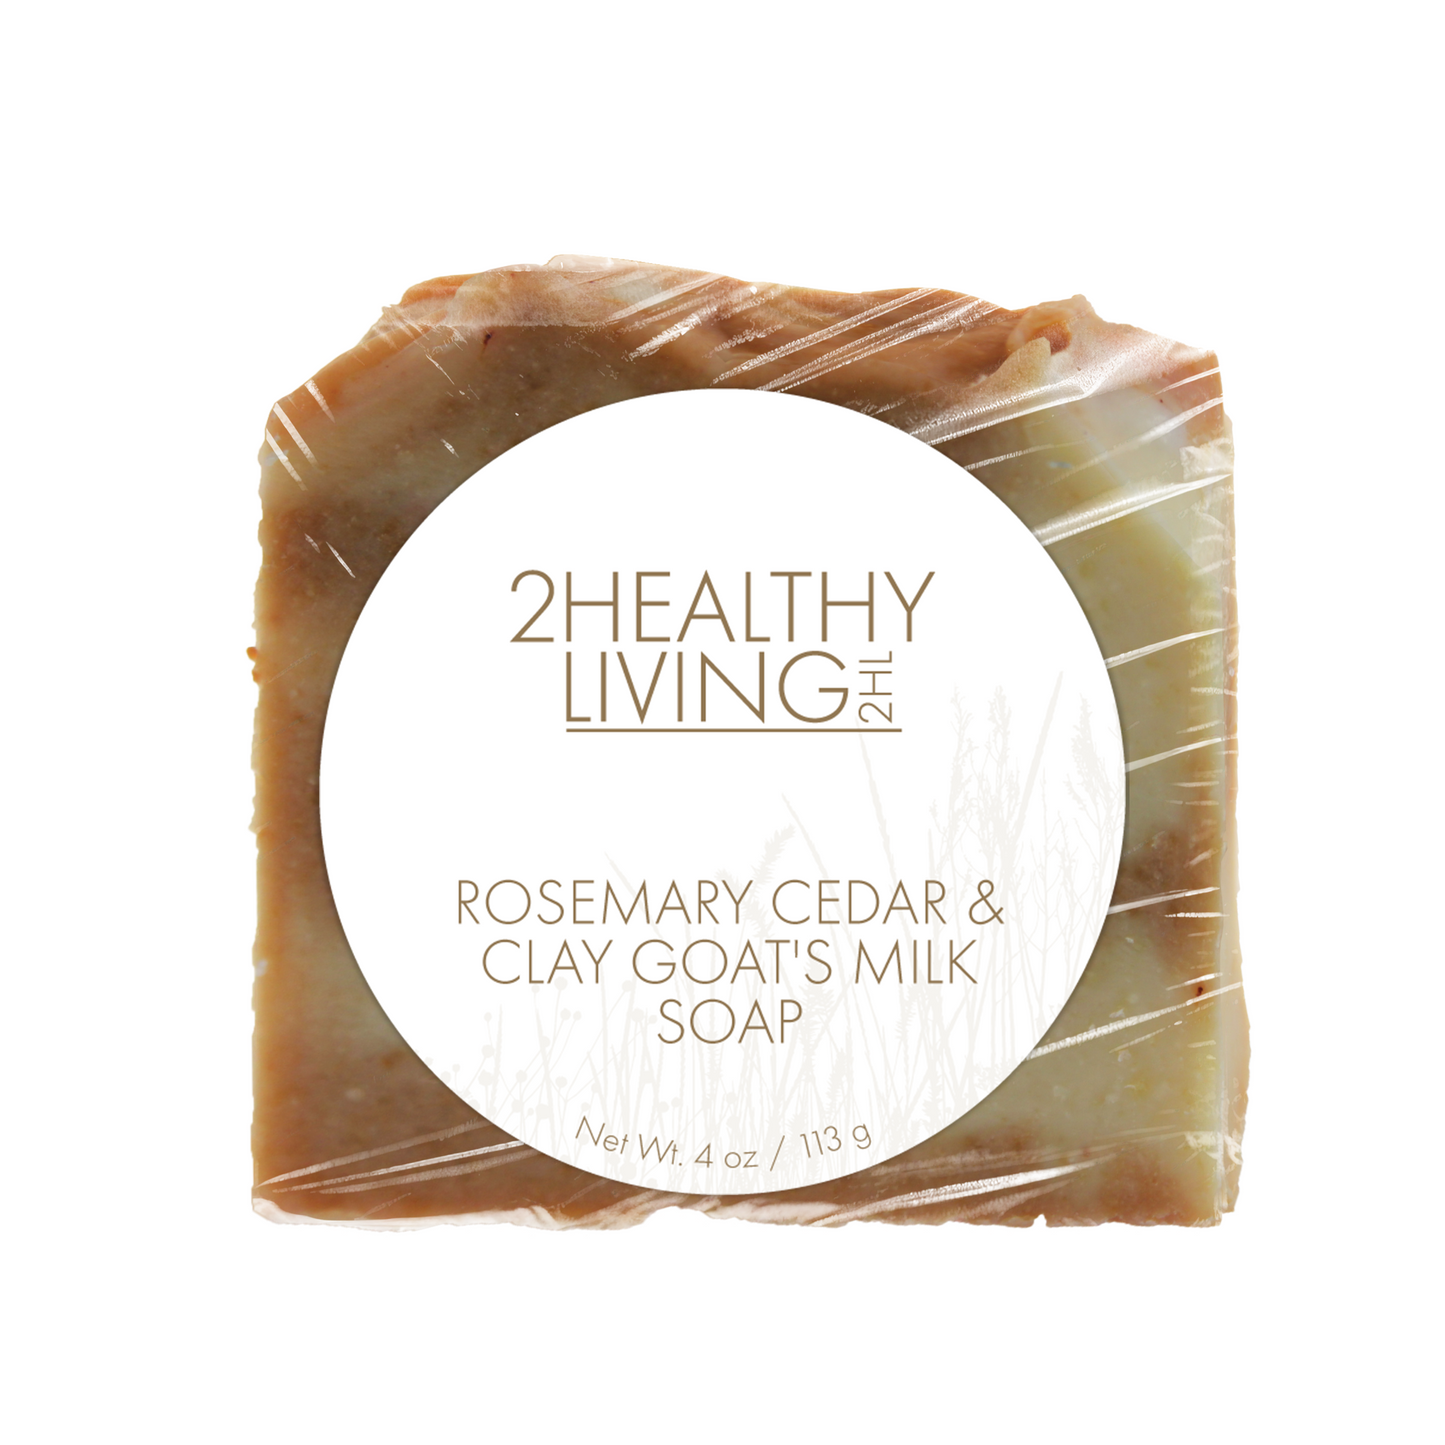 Rosemary Cedar & Clay Goat's Milk Soap